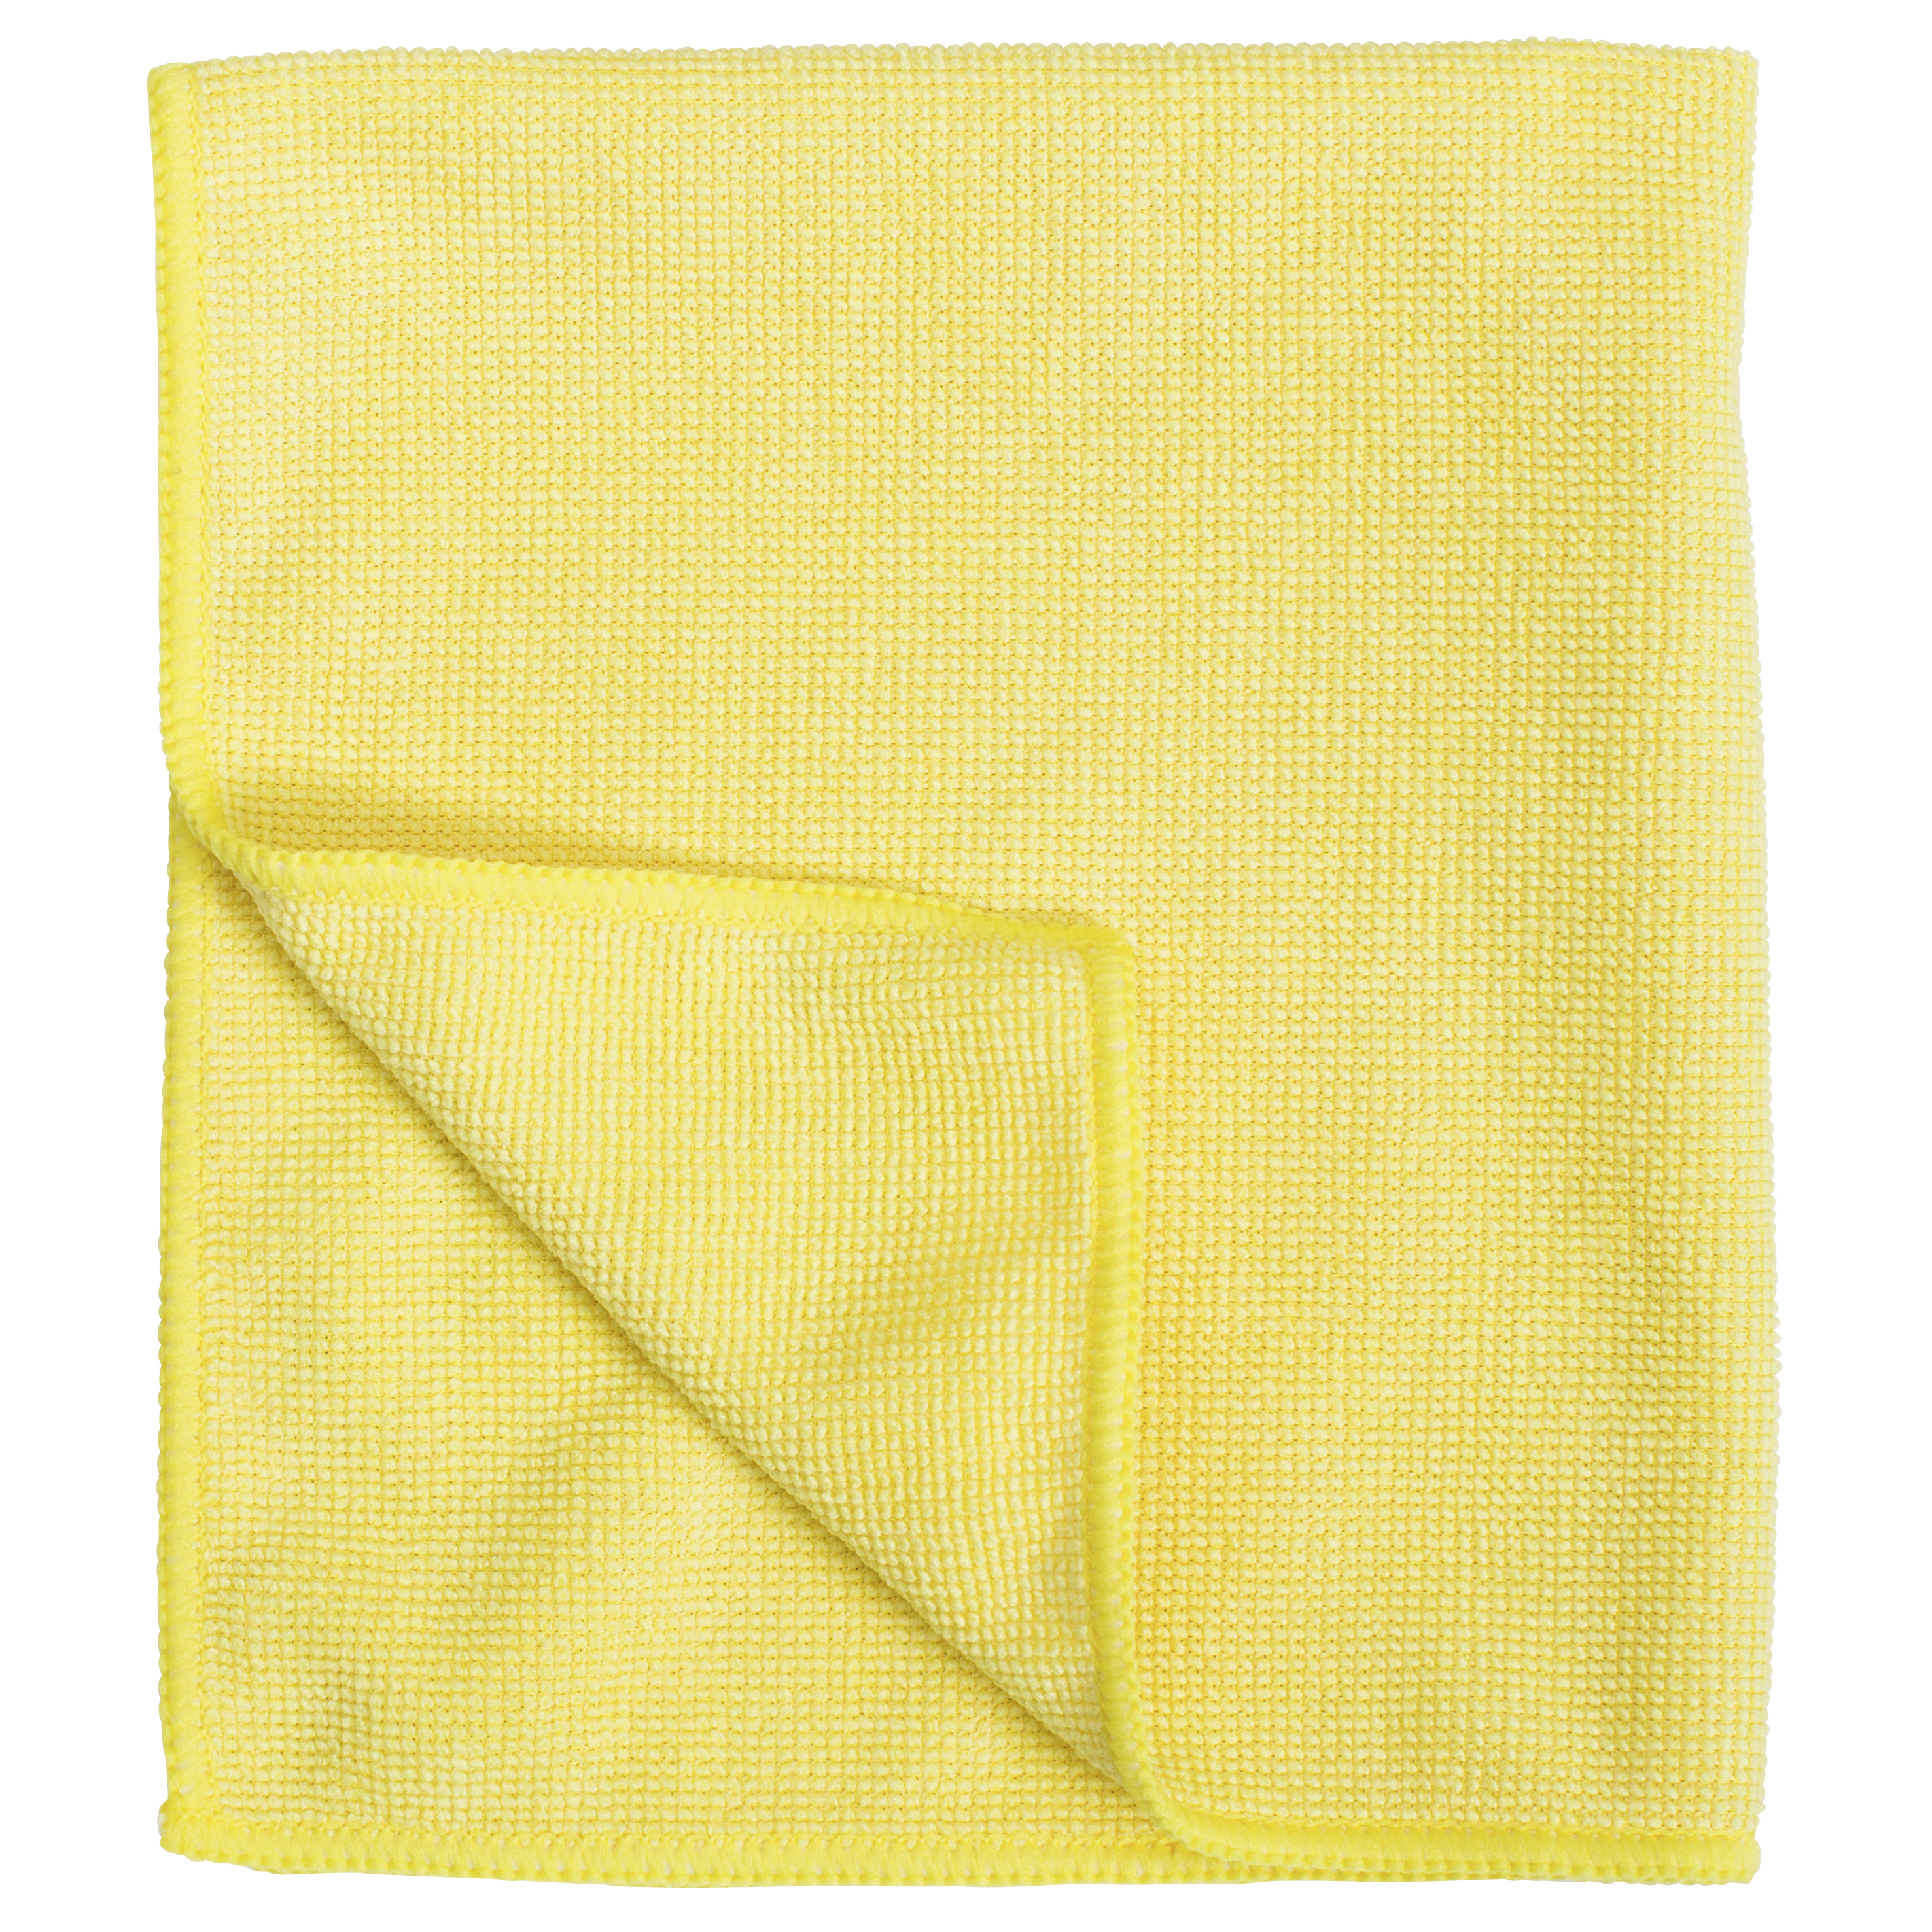 Vermop Progressive Tuch, Microfaser, gelb, 35 x 40 cm